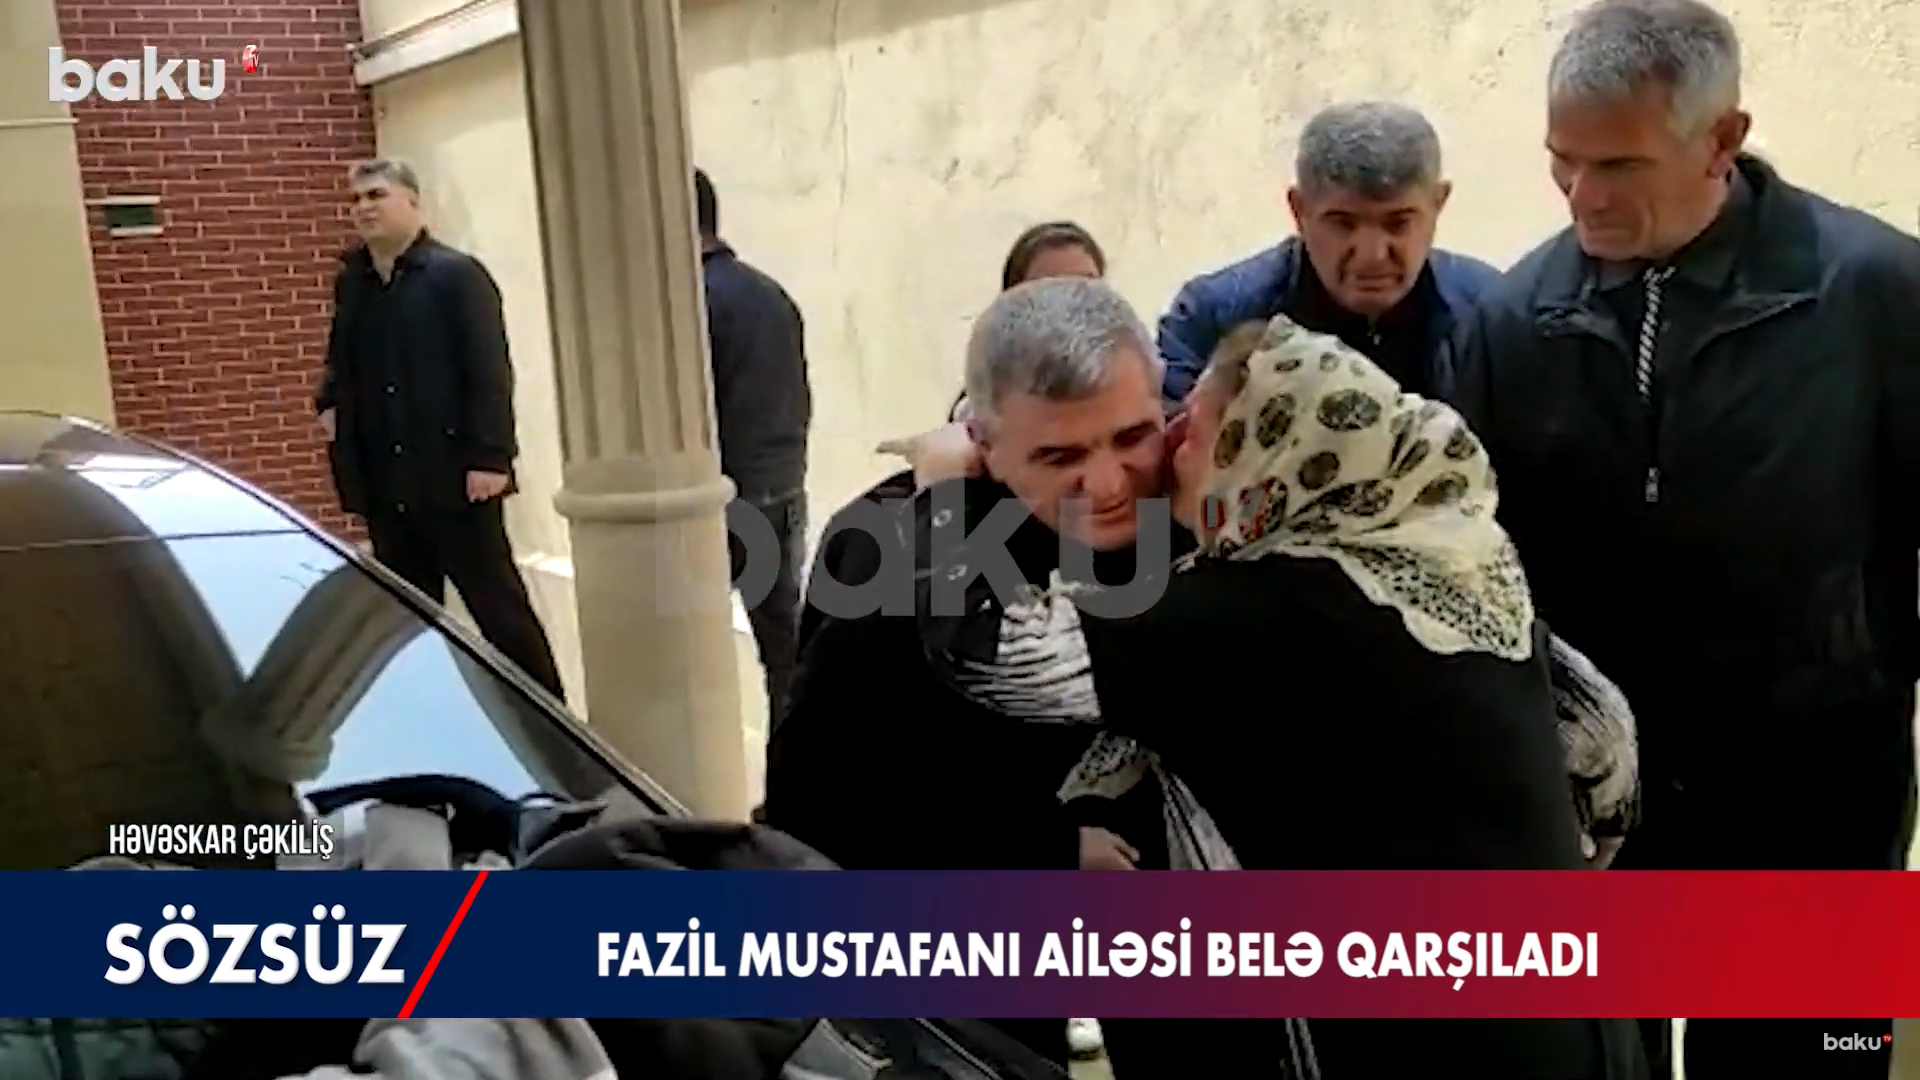 Ailəsinin Fazil Mustafanı qarşılama anı - VİDEO